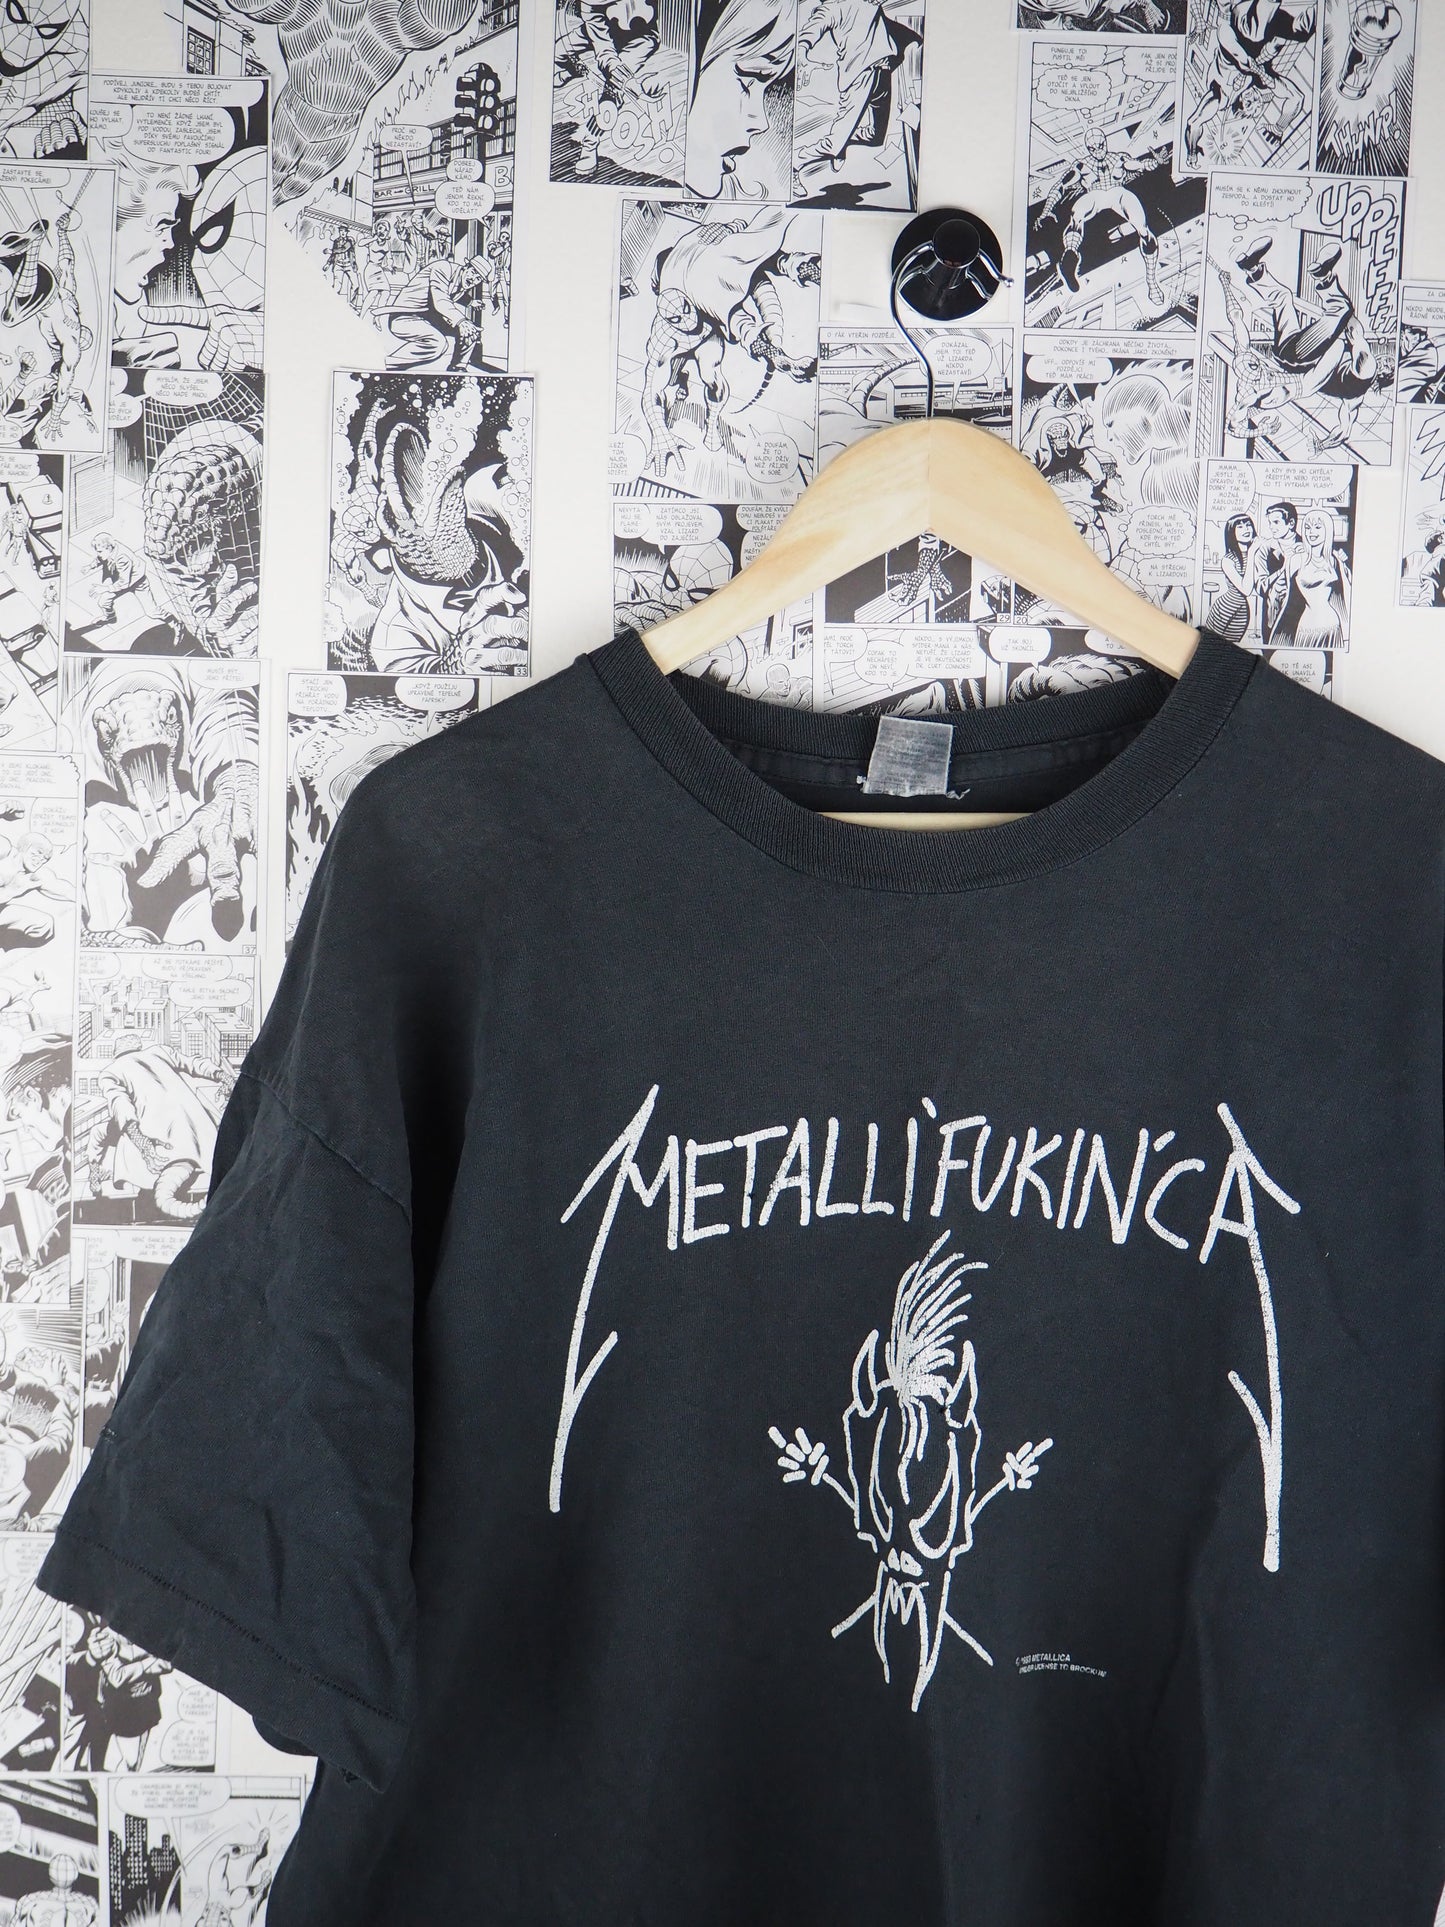 Vintage Metallica "Metallifukinca" 1993 t-shirt - size XL